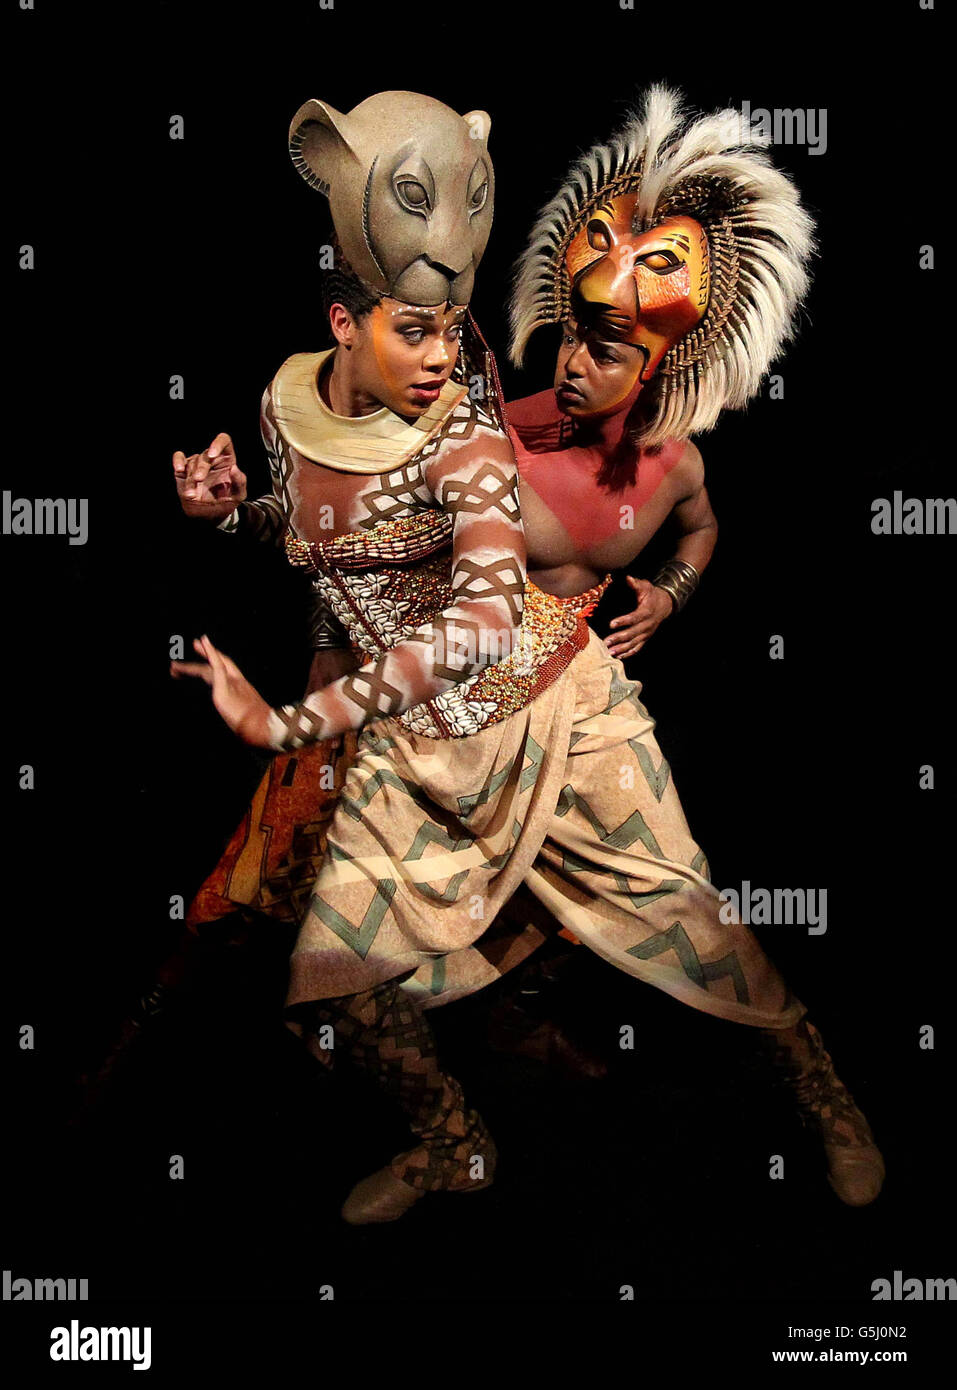 L-R Melina M'Poy (Nala) und Johnathan Andrew Hume As (Simba), aufgenommen bei der Vorstellung des Lion King Musicals im Project Arts Center in Dublin. Stockfoto